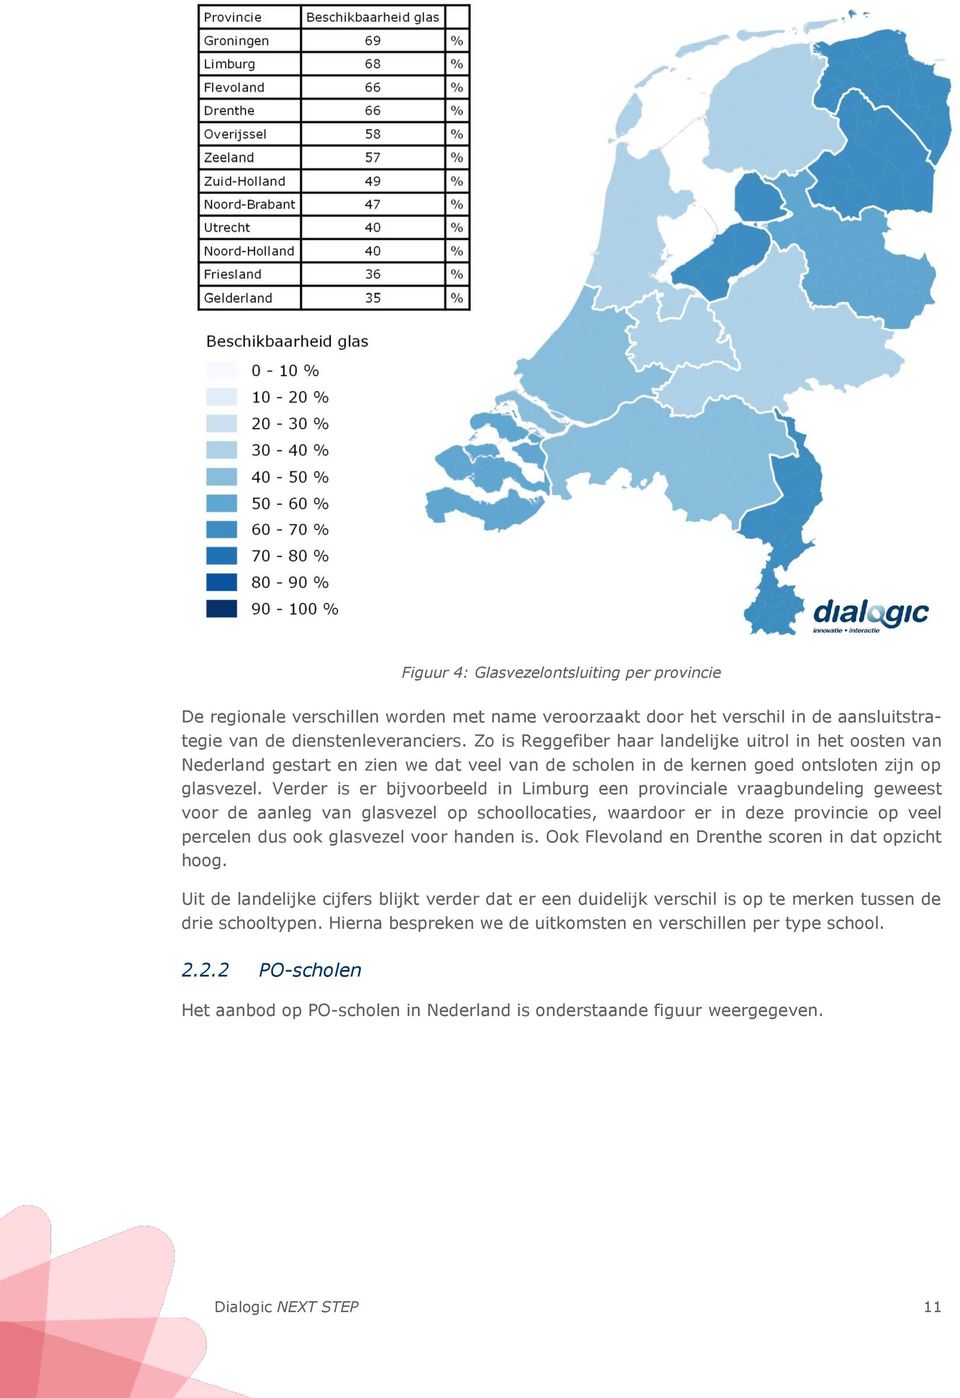 Verder is er bijvoorbeeld in Limburg een provinciale vraagbundeling geweest voor de aanleg van glasvezel op schoollocaties, waardoor er in deze provincie op veel percelen dus ook glasvezel voor